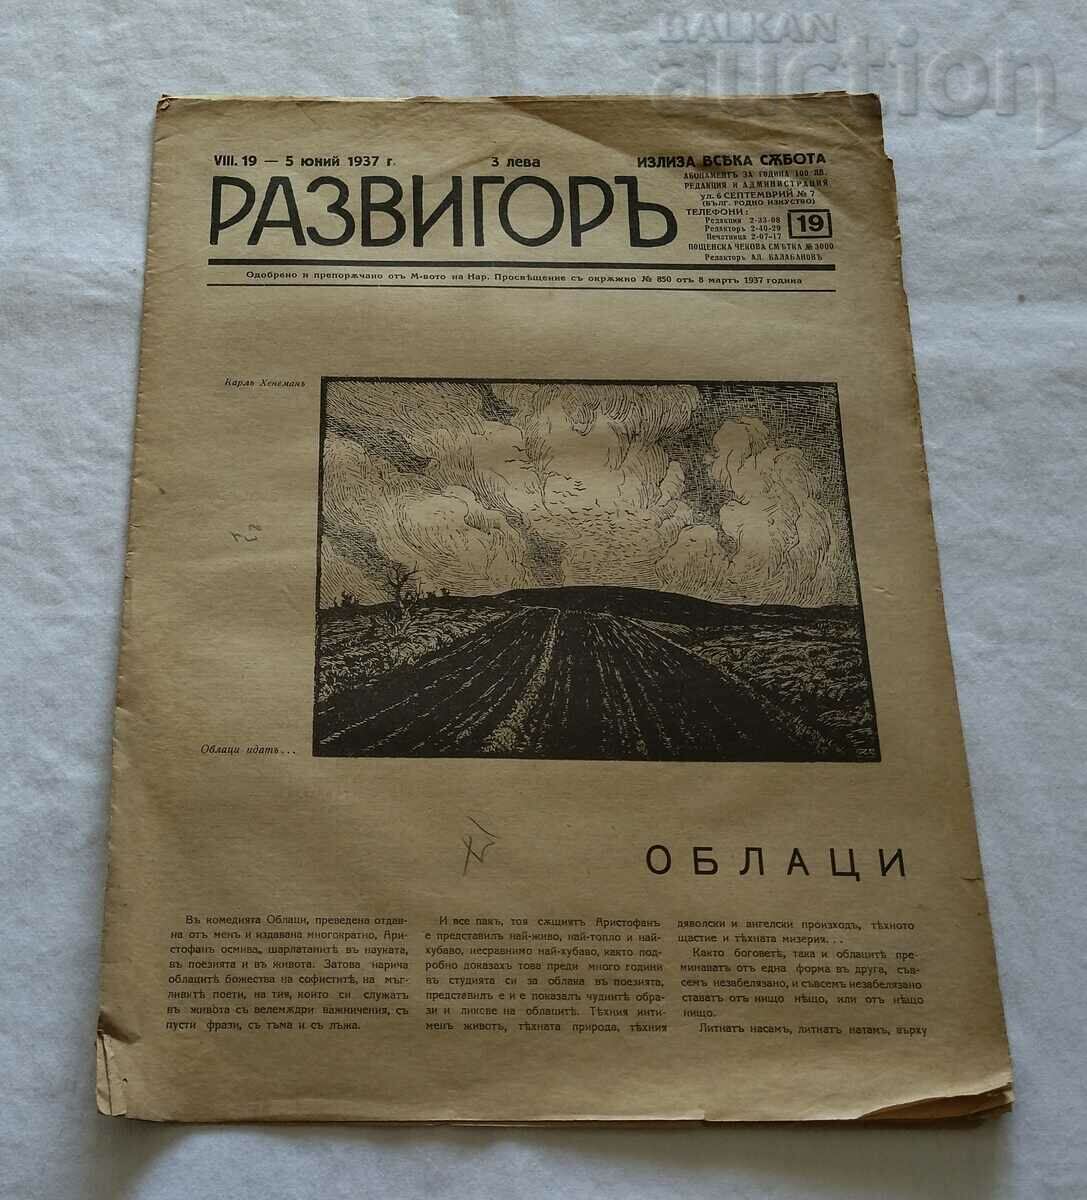 V-C "RAZVIGOR" ISSUE 19 1937